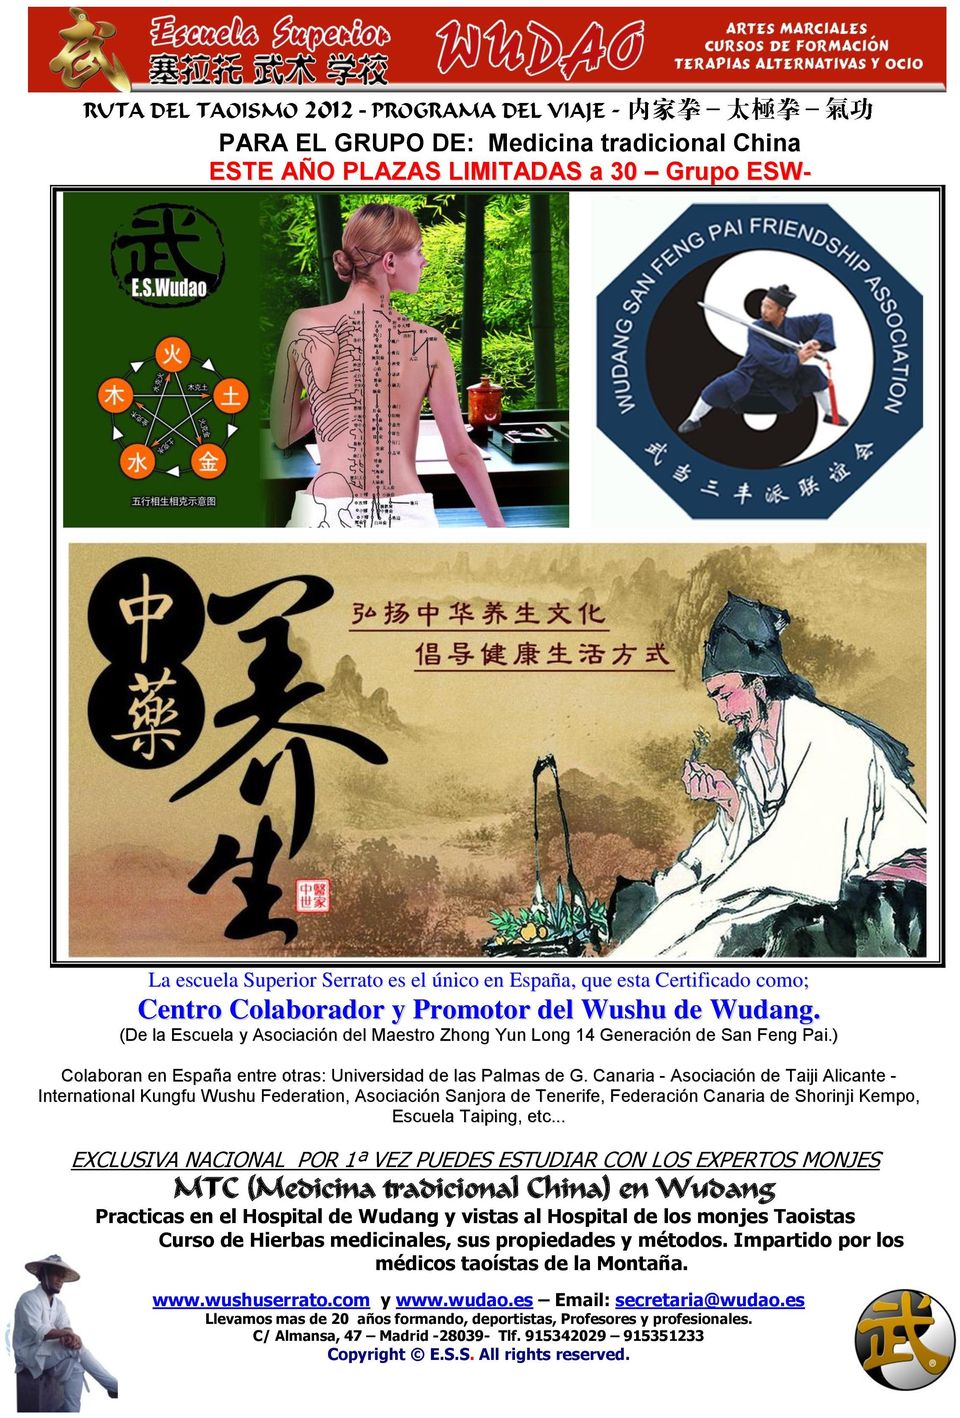 Canaria - Asociación de Taiji Alicante - International Kungfu Wushu Federation, Asociación Sanjora de Tenerife, Federación Canaria de Shorinji Kempo, Escuela Taiping, etc.